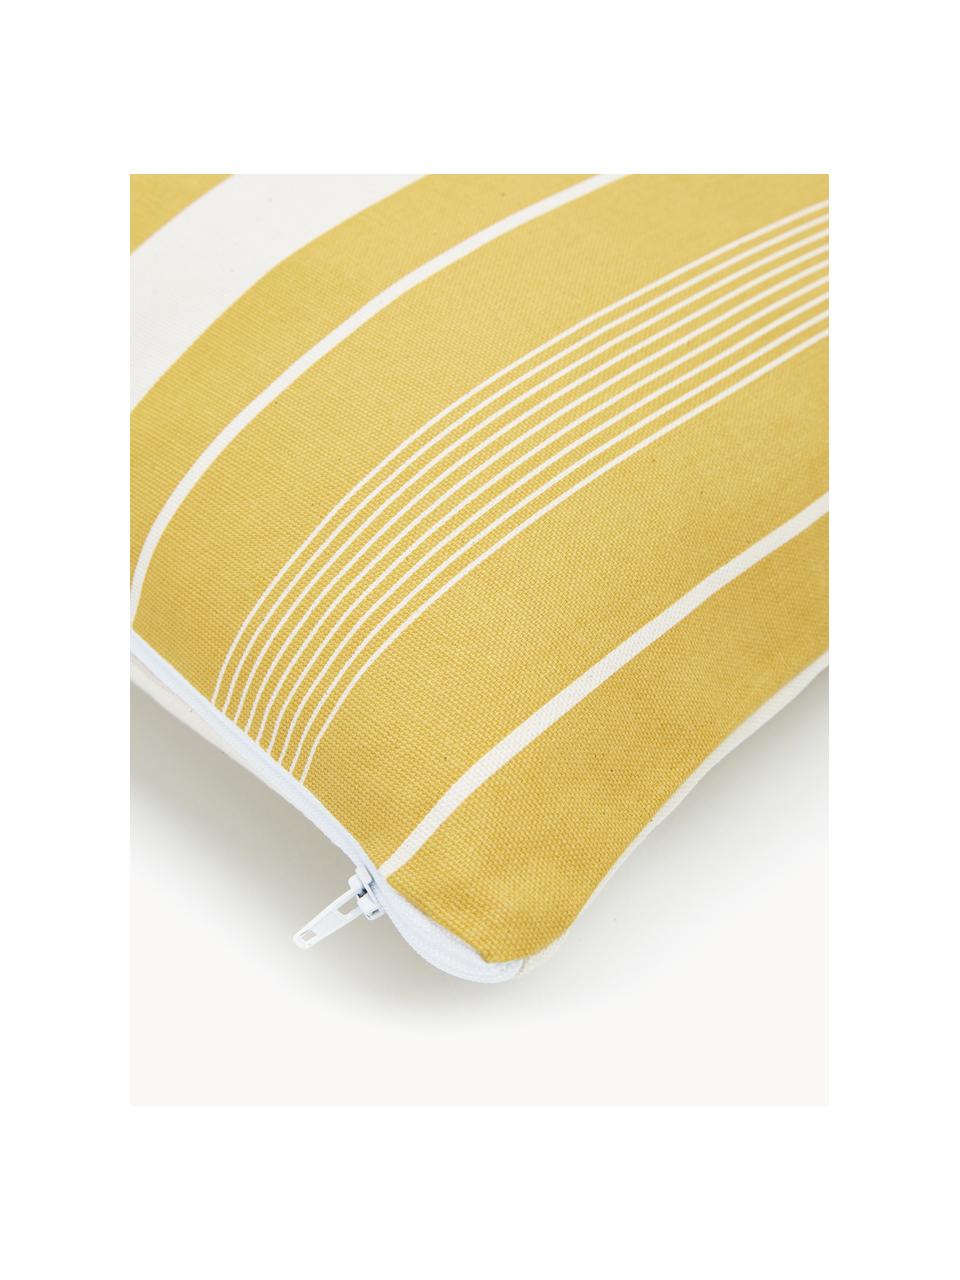 Poszewka na poduszkę Raji, 100% bawełna, Biały, żółty, S 45 x D 45 cm